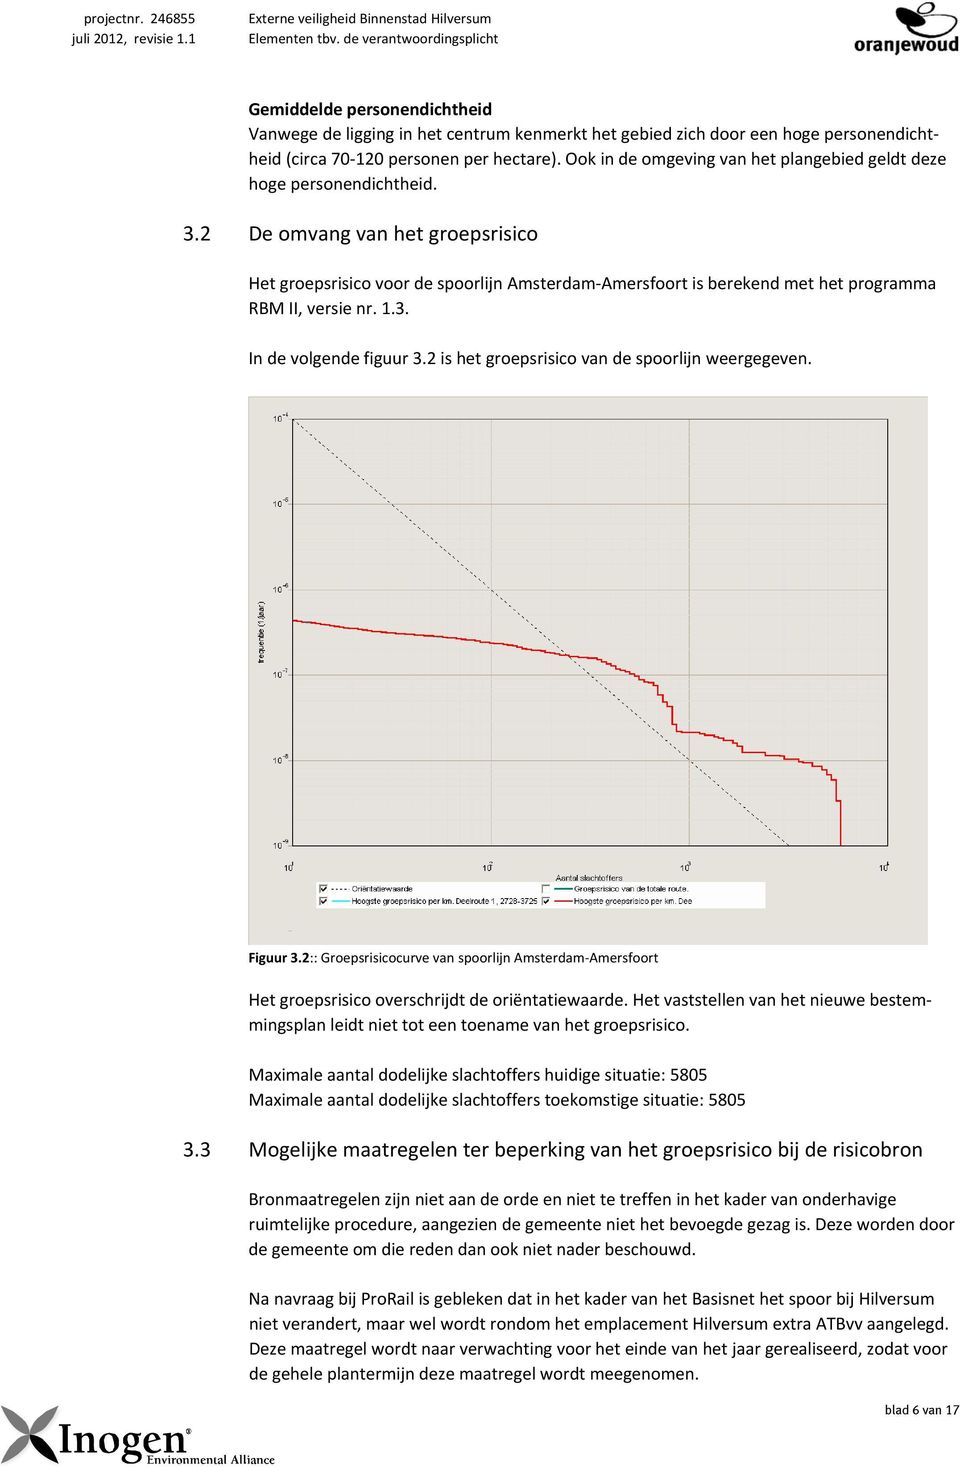 2 De omvang van het groepsrisico Het groepsrisico voor de spoorlijn Amsterdam Amersfoort is berekend met het programma RBM II, versie nr. 1.3. In de volgende figuur 3.